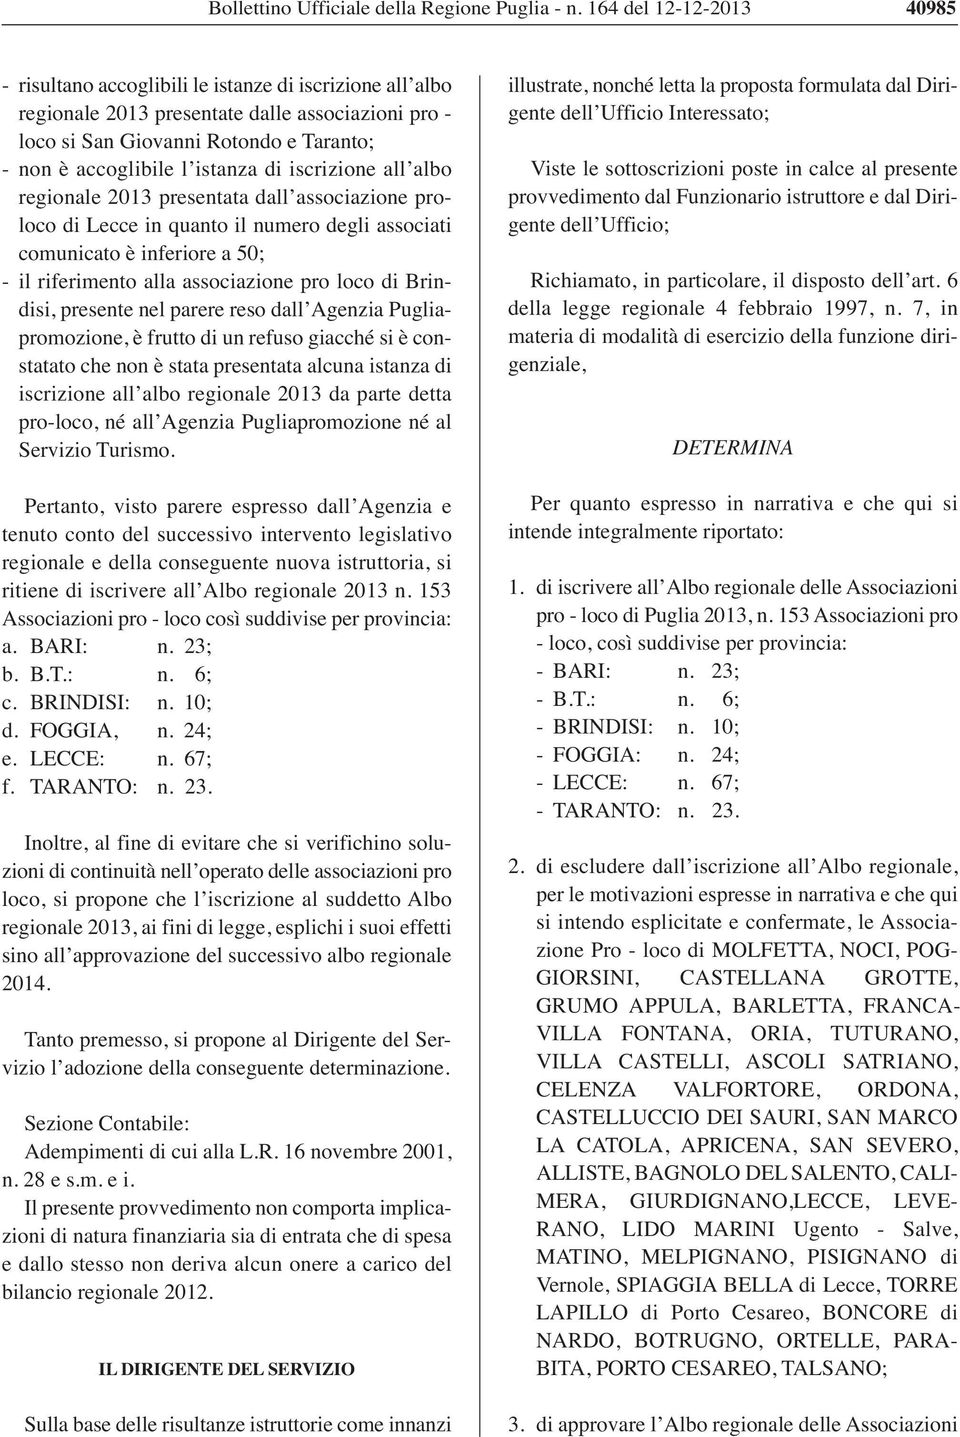 istanza di iscrizione all albo regionale 2013 presentata dall associazione proloco di Lecce in quanto il numero degli associati comunicato è inferiore a 50; - il riferimento alla associazione pro